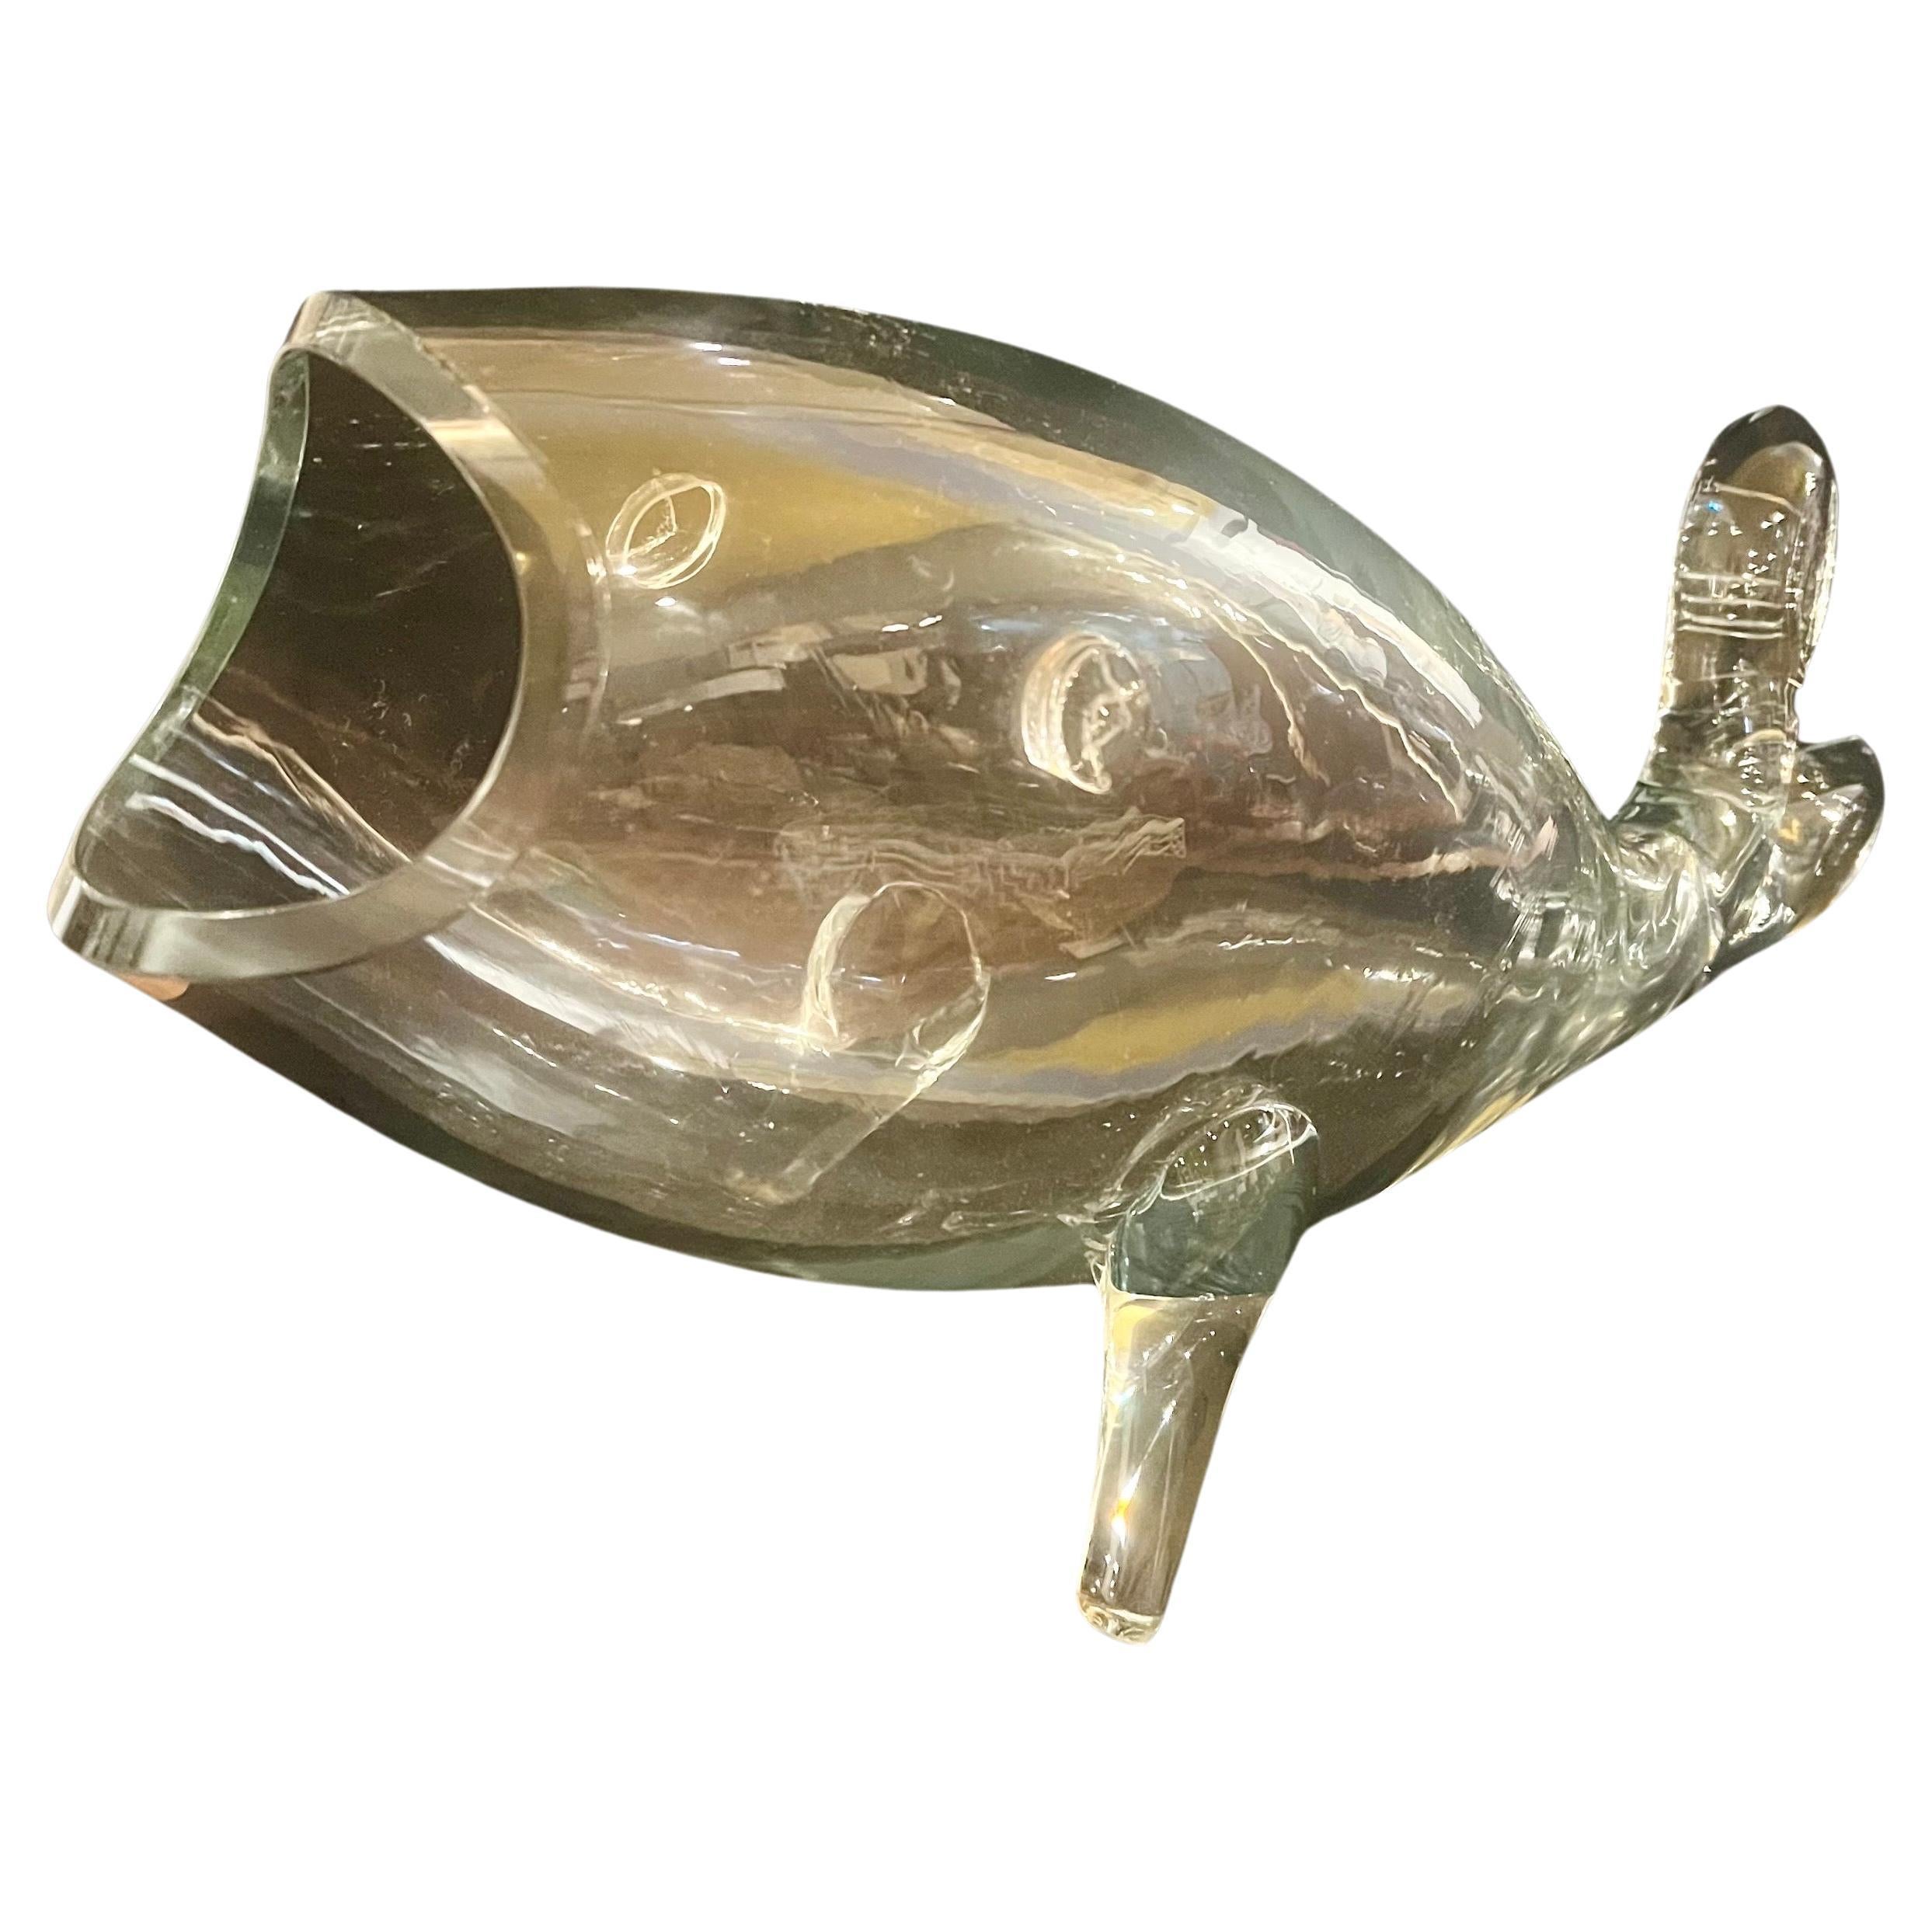 Amusant vase à poisson de collection en verre transparent du milieu du siècle dernier par Blenko, vers les années 1970. Pièce élégante et chic de la décoration du milieu du siècle.